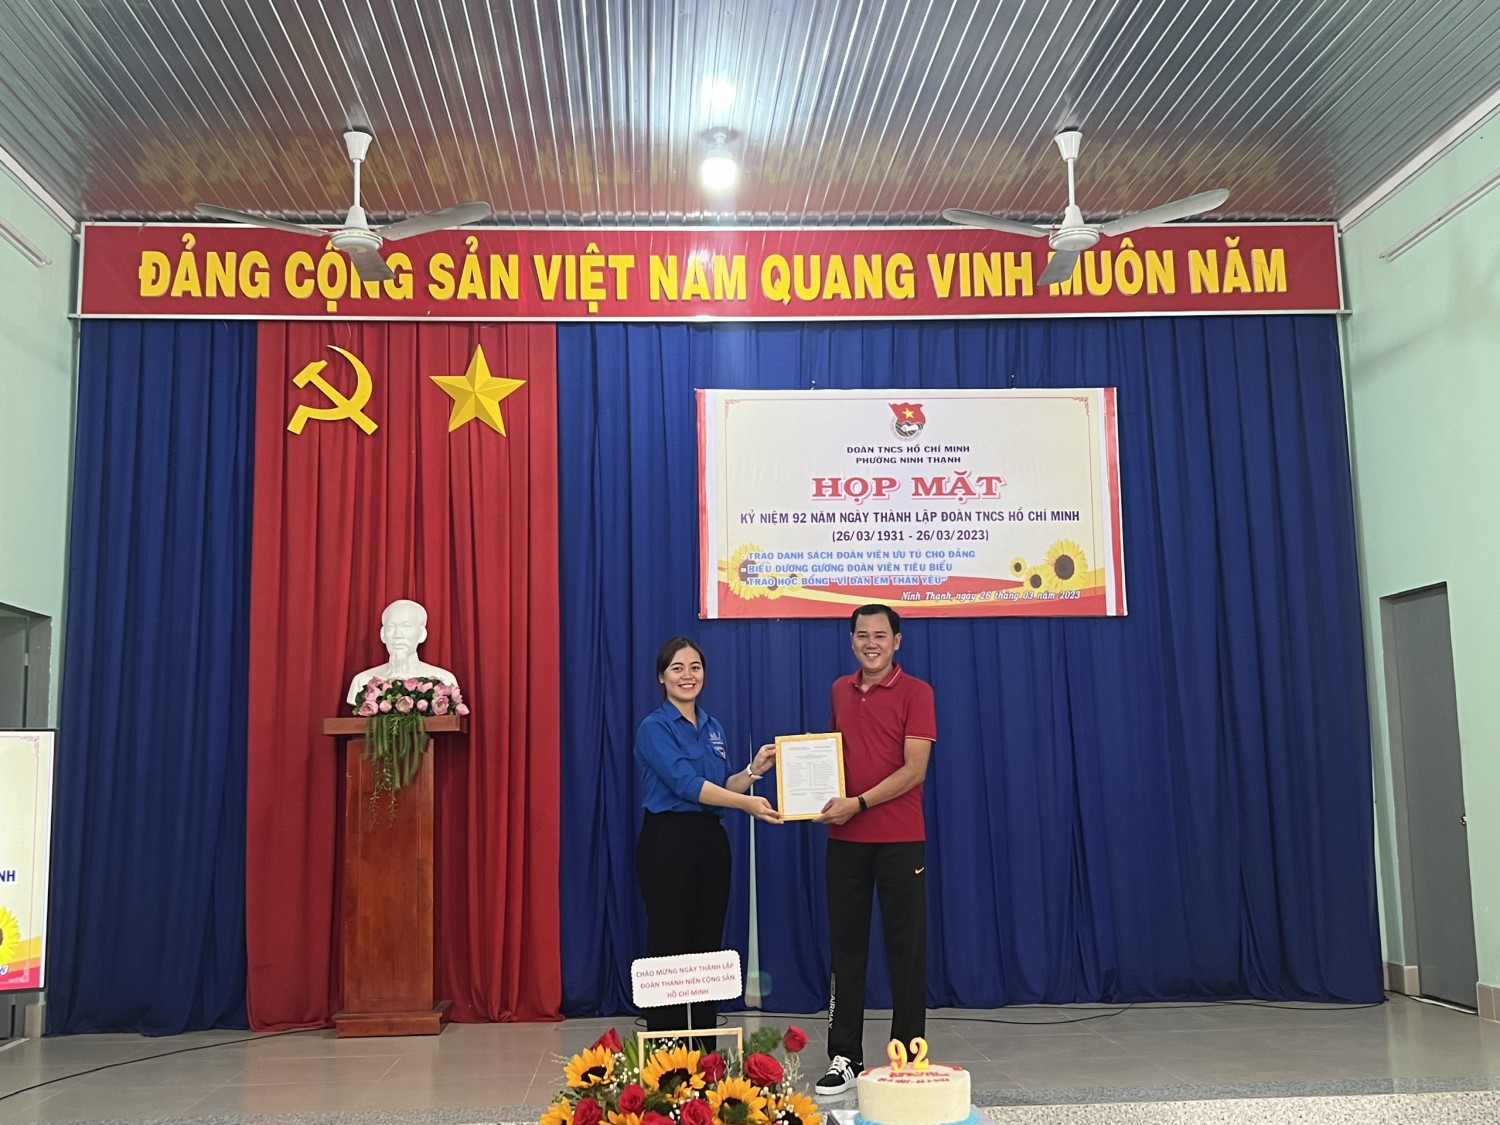 Đoàn thanh niên phường Ninh Thạnh tổ chức buổi họp mặt kỷ niệm 92 năm ngày thành lập Đoàn TNCS Hồ Chí Minh.